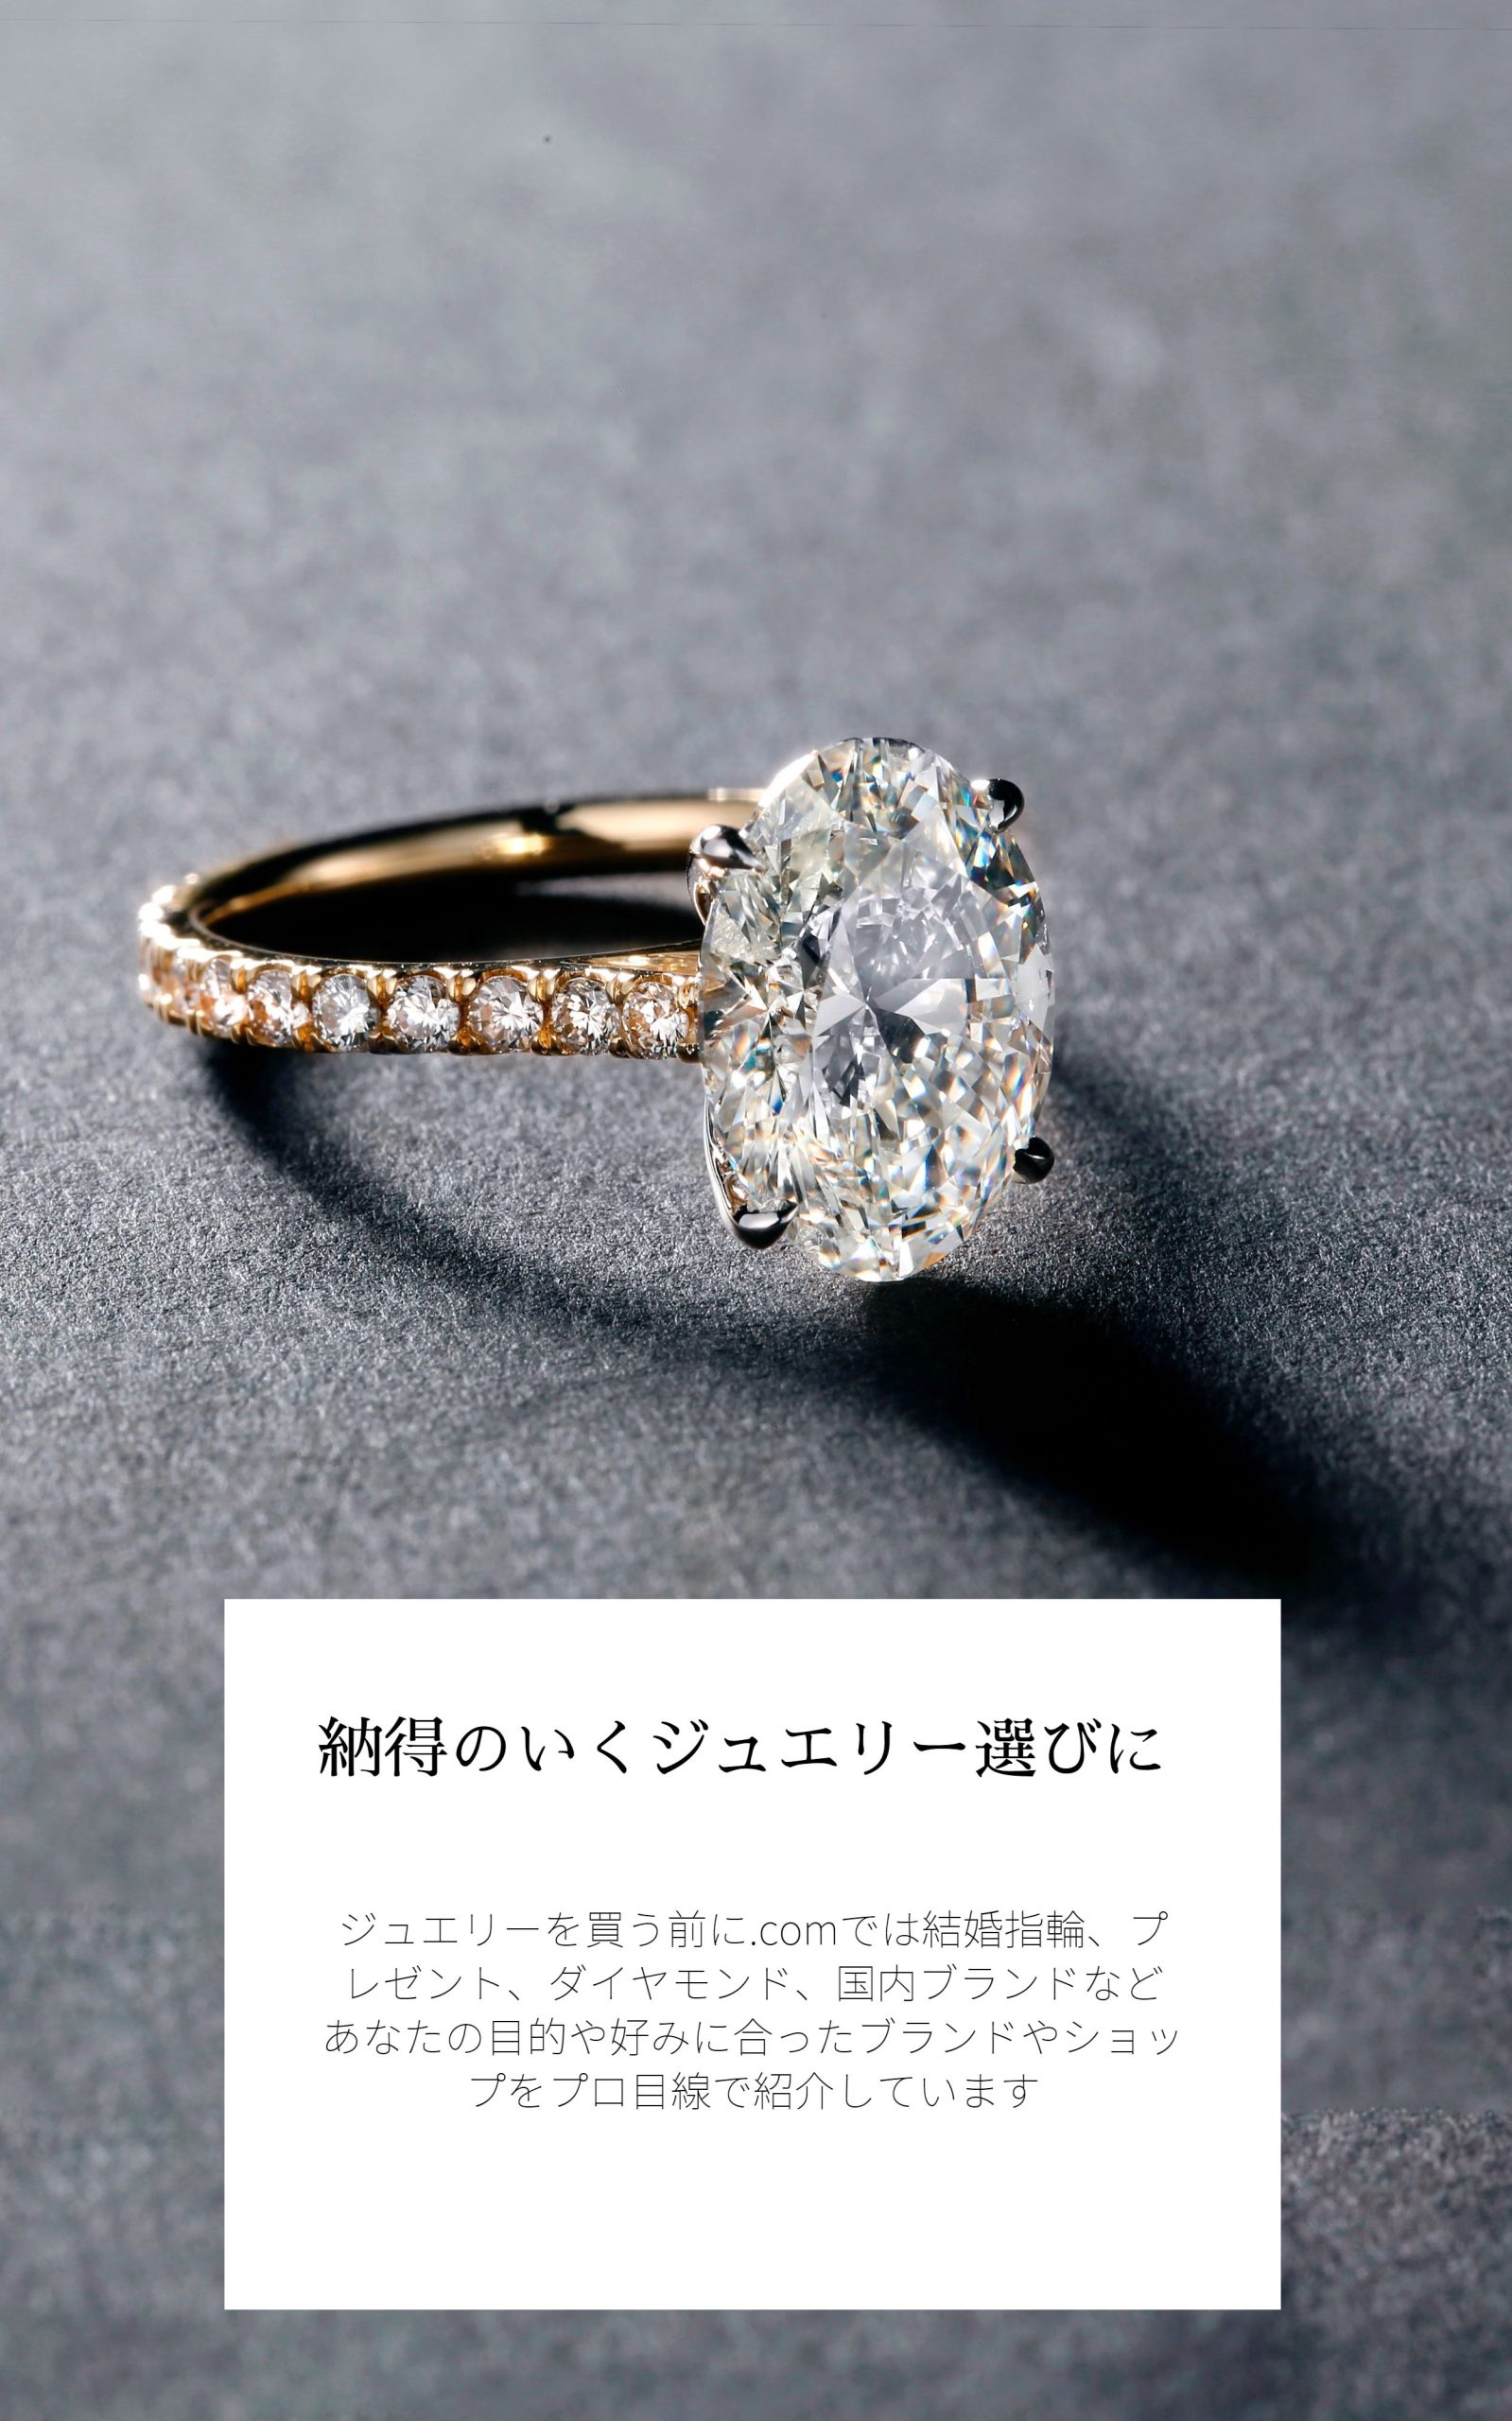 絶対に損をしないパール、ダイヤモンド、婚約指輪、ジュエリー選びをご提案 - ジュエリーを買う前の総合情報サイト